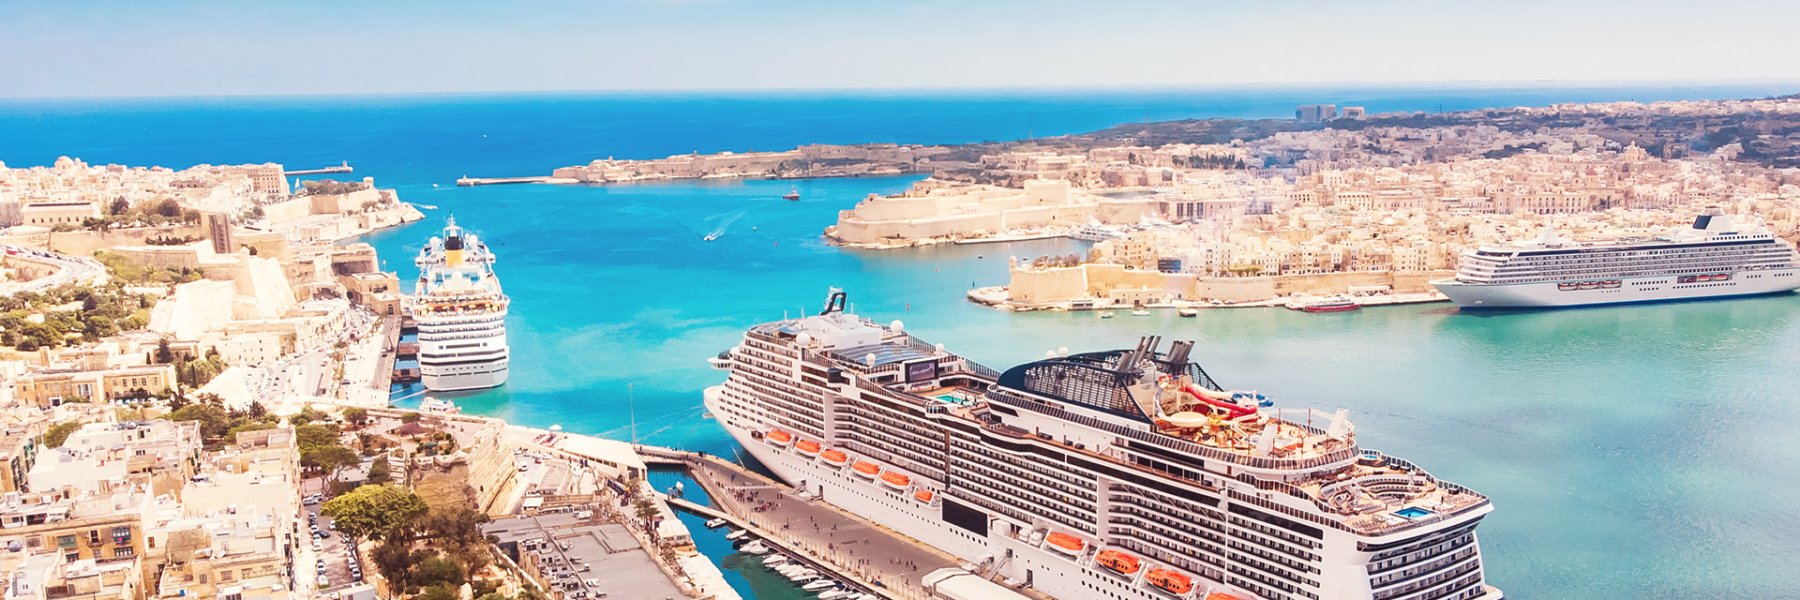 Luxuriöse Ferienhäuser auf Malta